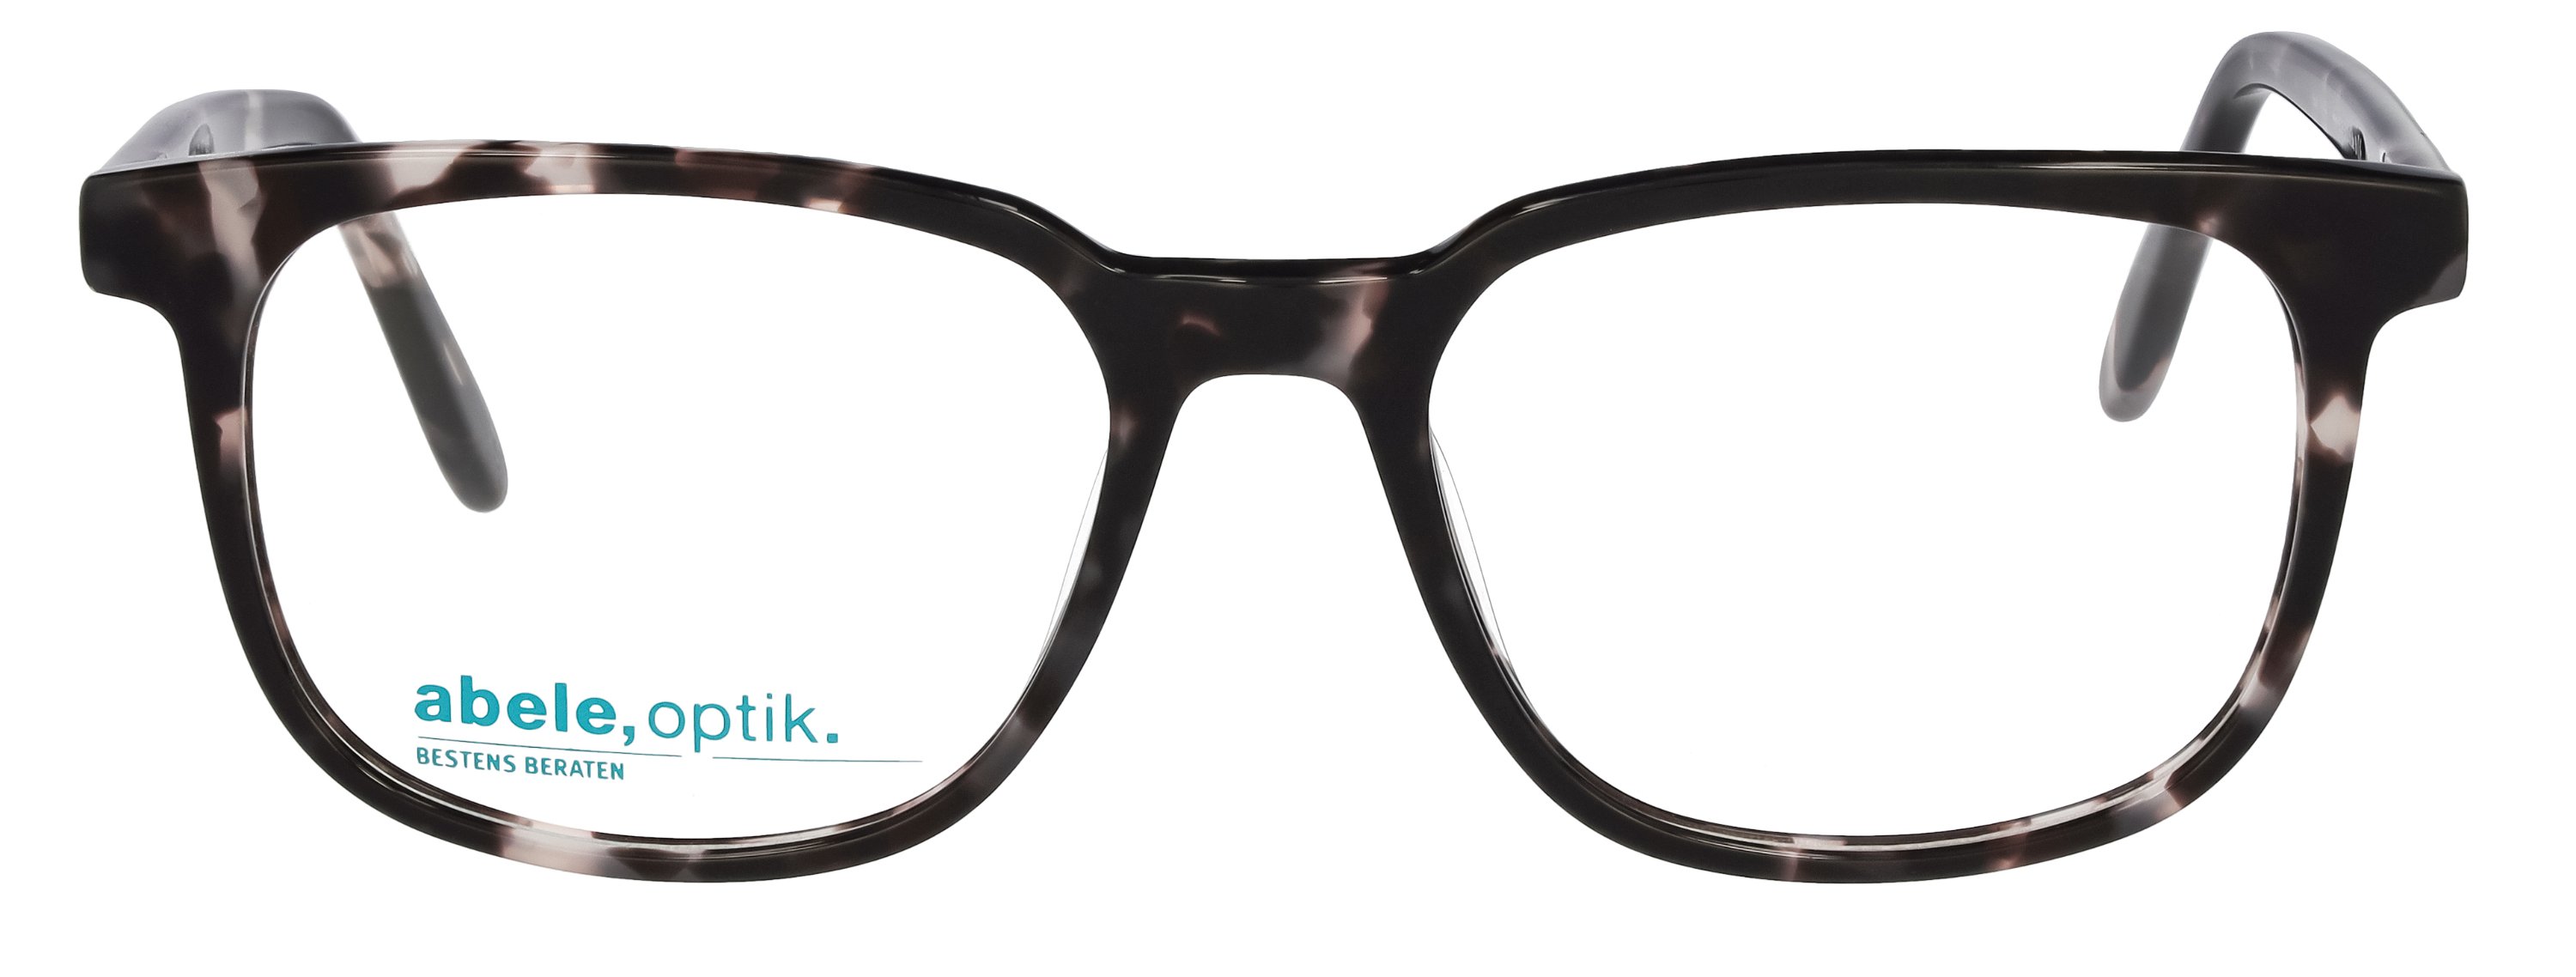 abele optik Brille 148301 für / braun in gemustert schwarz Herren